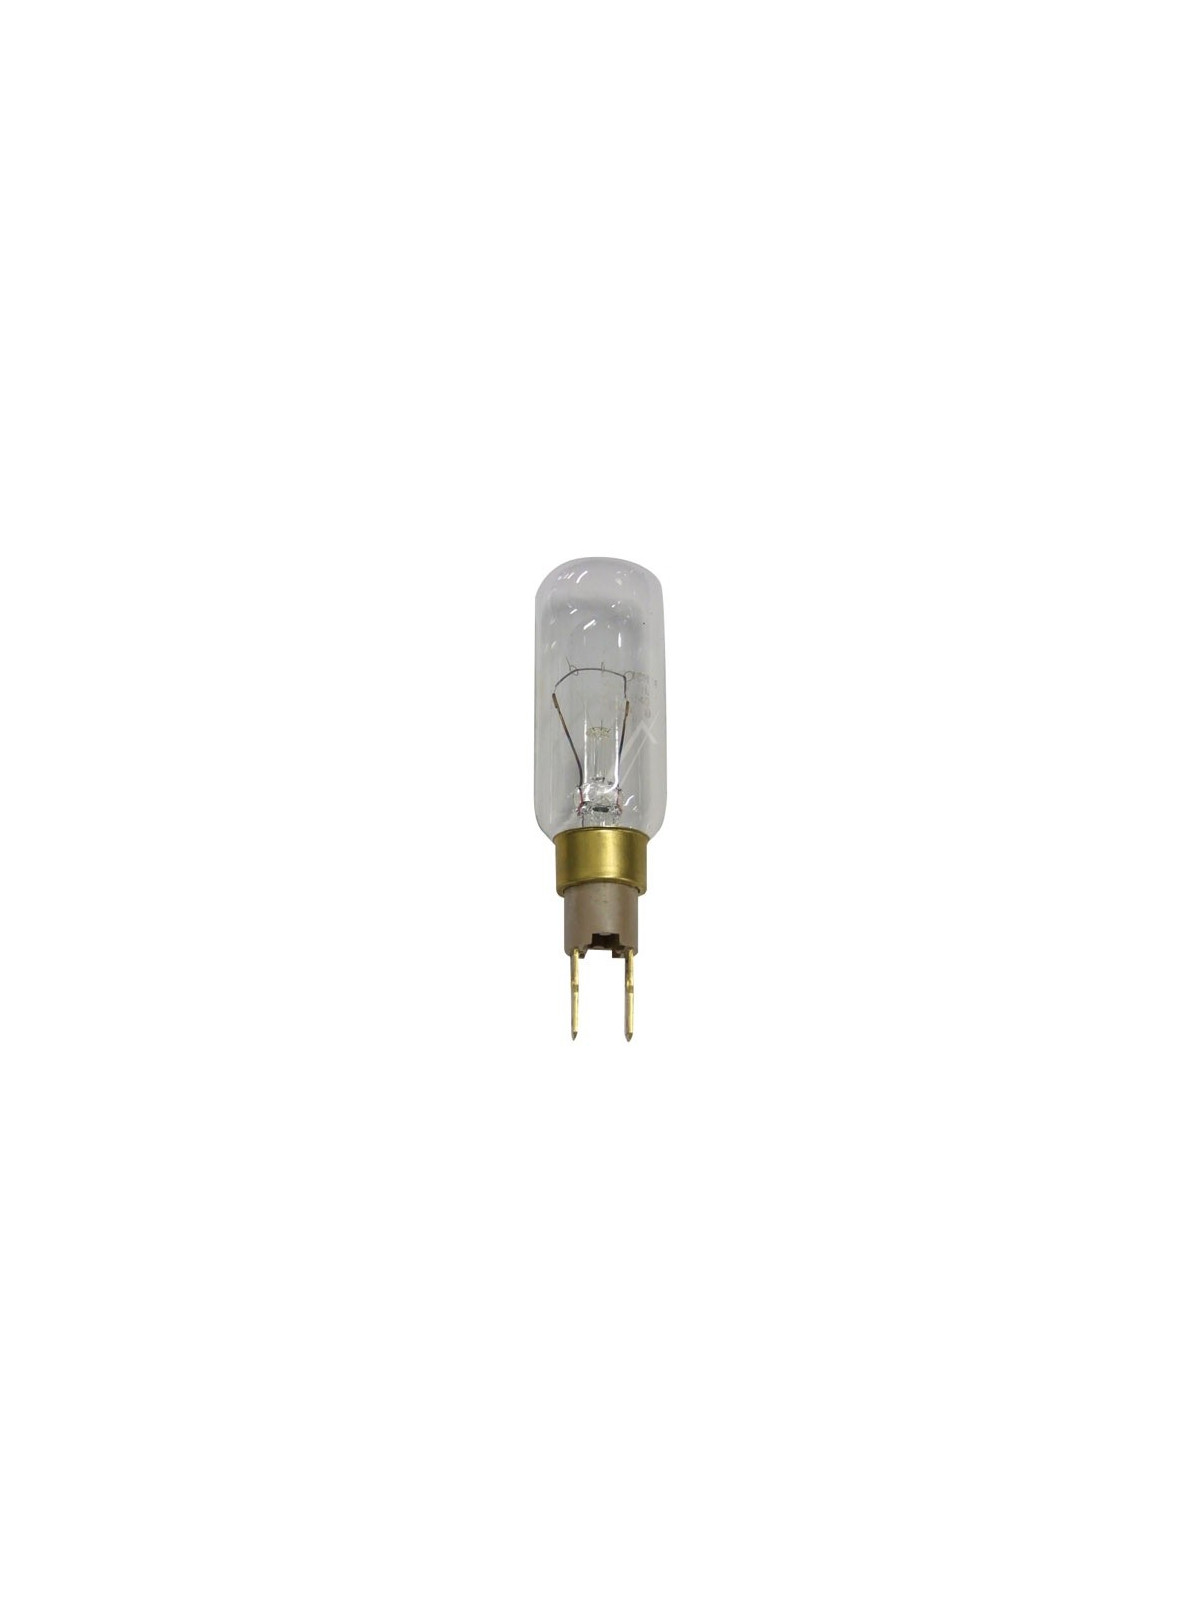 Lampe T25L - 40w Whirlpool - Réfrigérateur & Congélateur